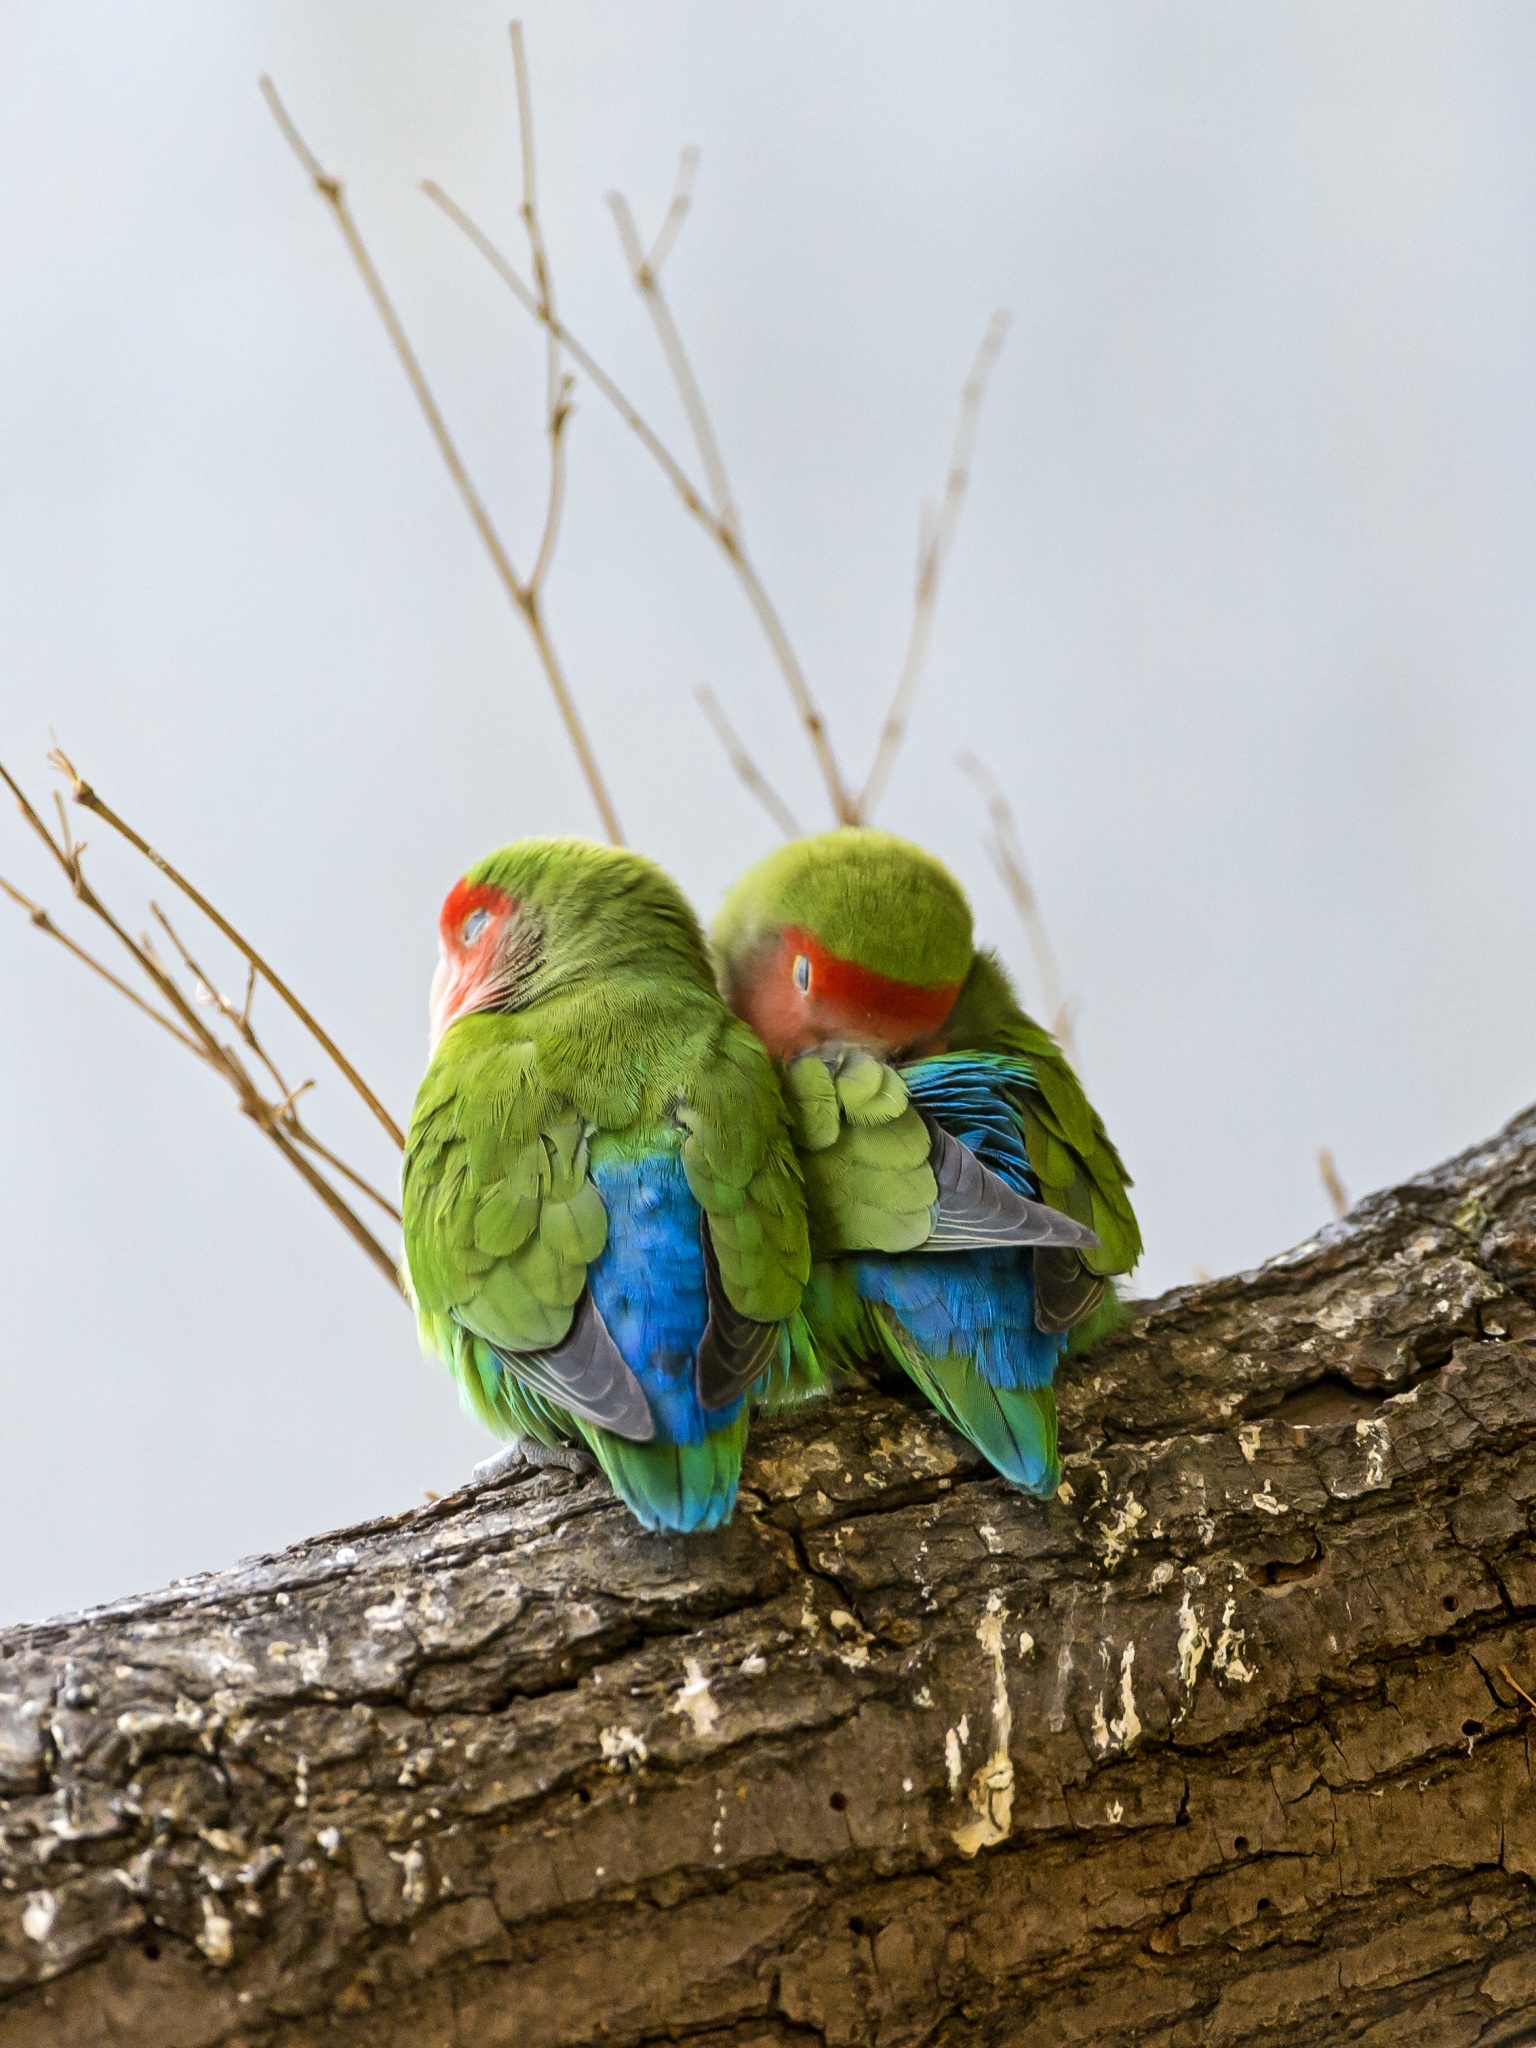 Rosy-faced lovebirds wallpaper, Peach-faced lovebirds, Bird couple, Tree branch, 1540x2050 HD Handy